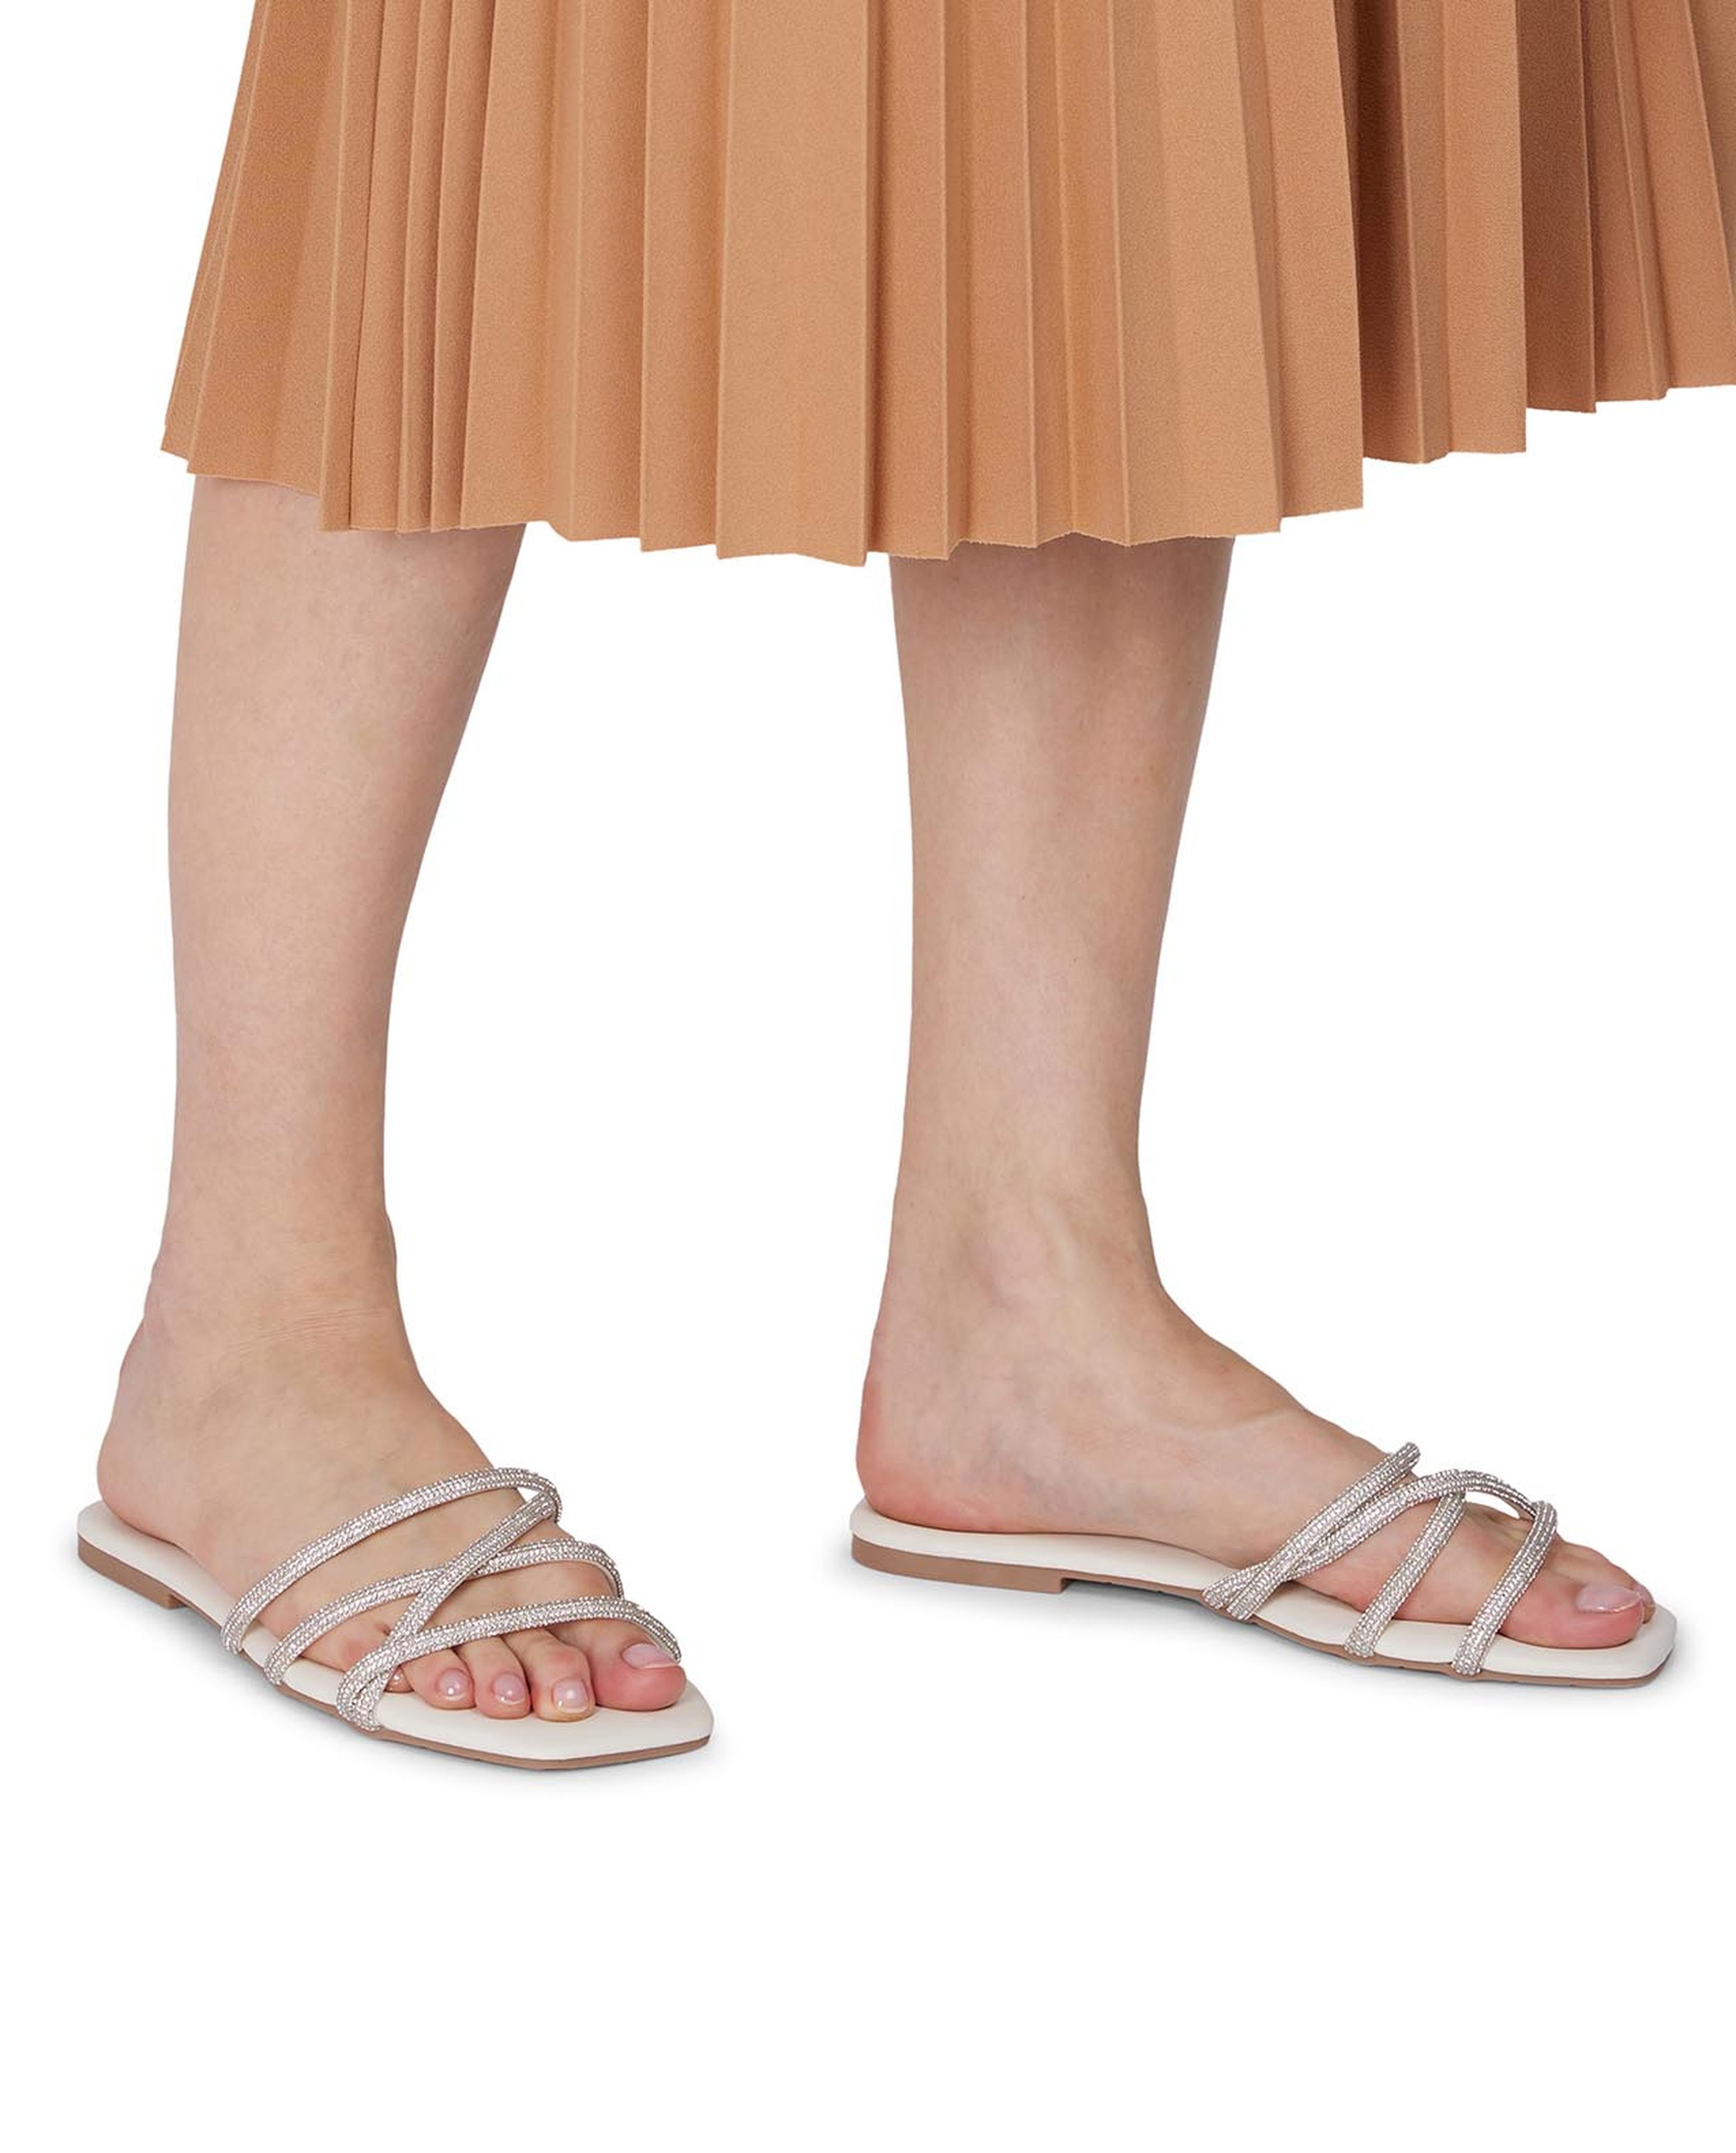 Embellished Flat Sandals